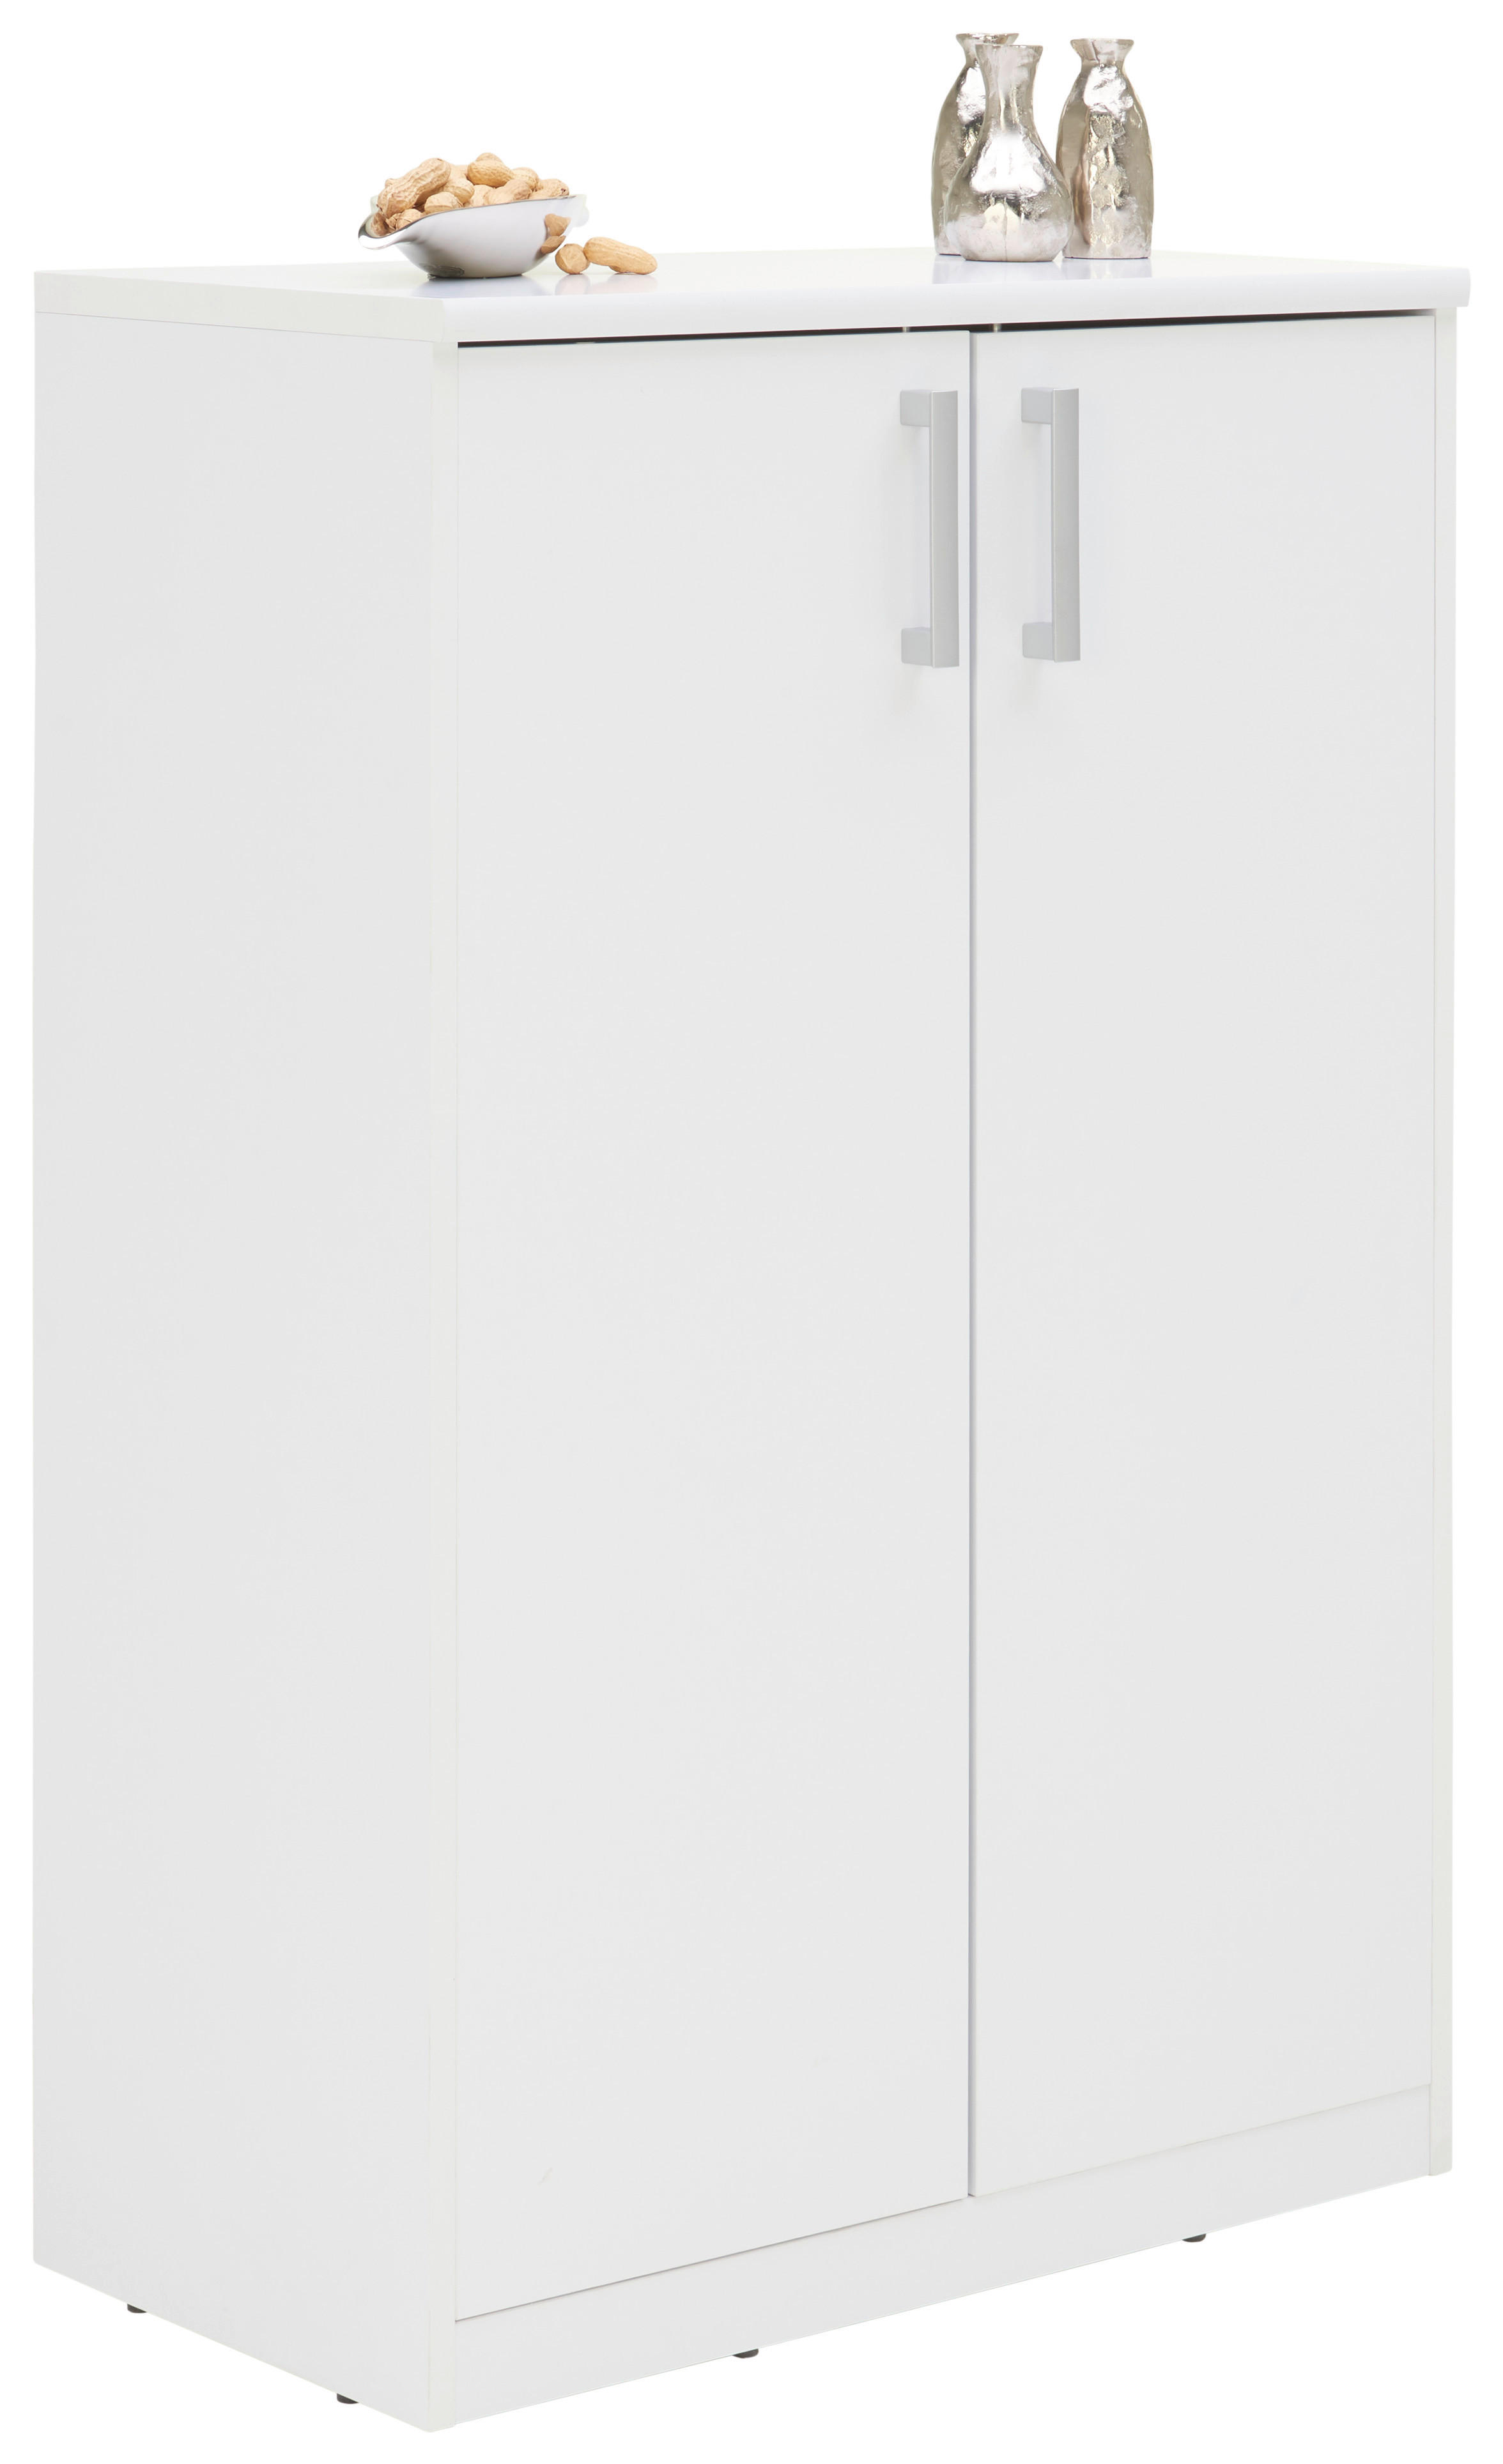 KOMMODE 72/110/36 cm  - Weiss/Silberfarben, Konventionell, Holzwerkstoff/Kunststoff (72/110/36cm) - Xora